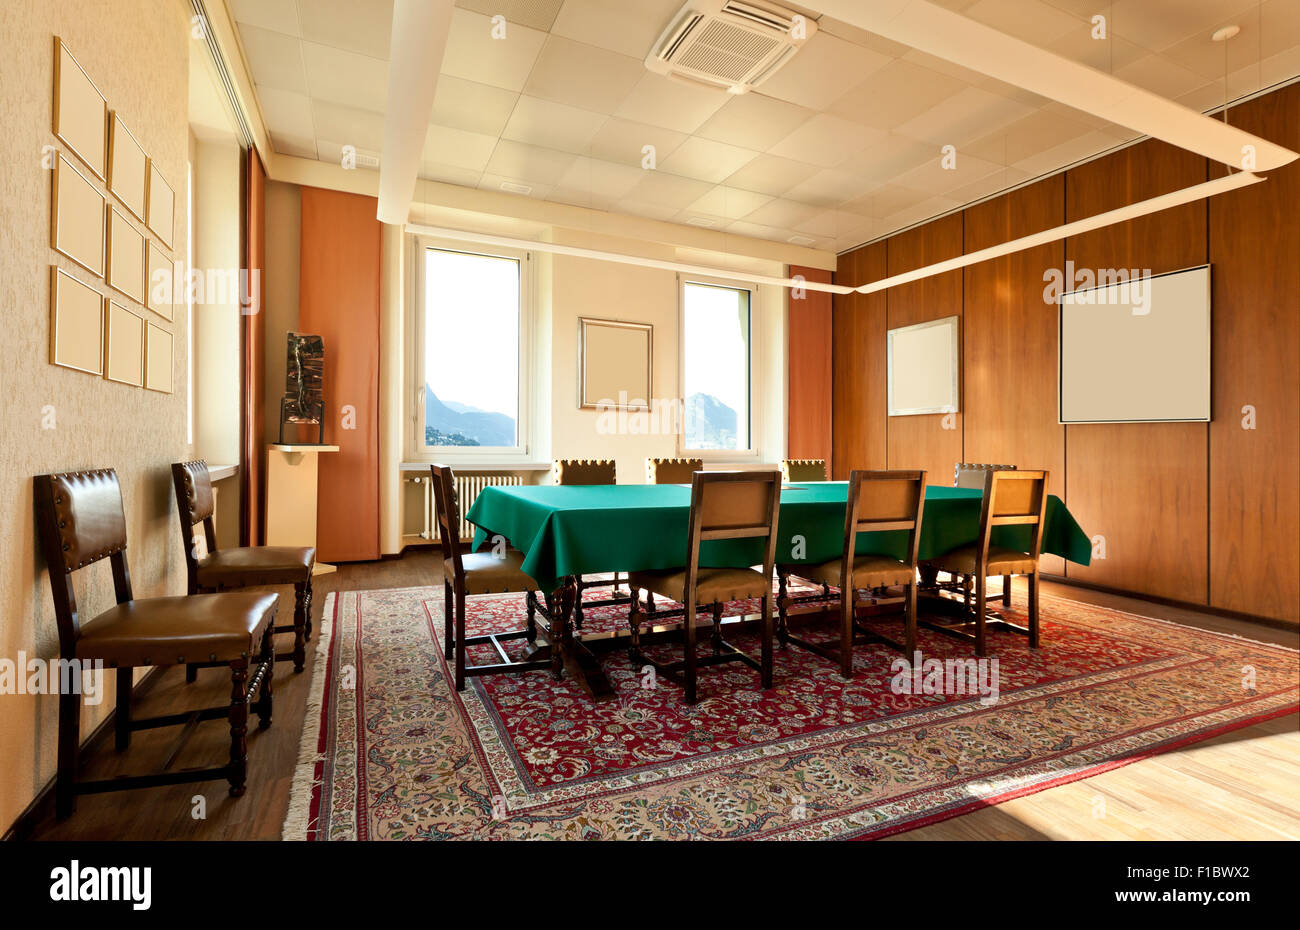 Sala riunioni nella vecchia casa, tavolo verde Foto Stock